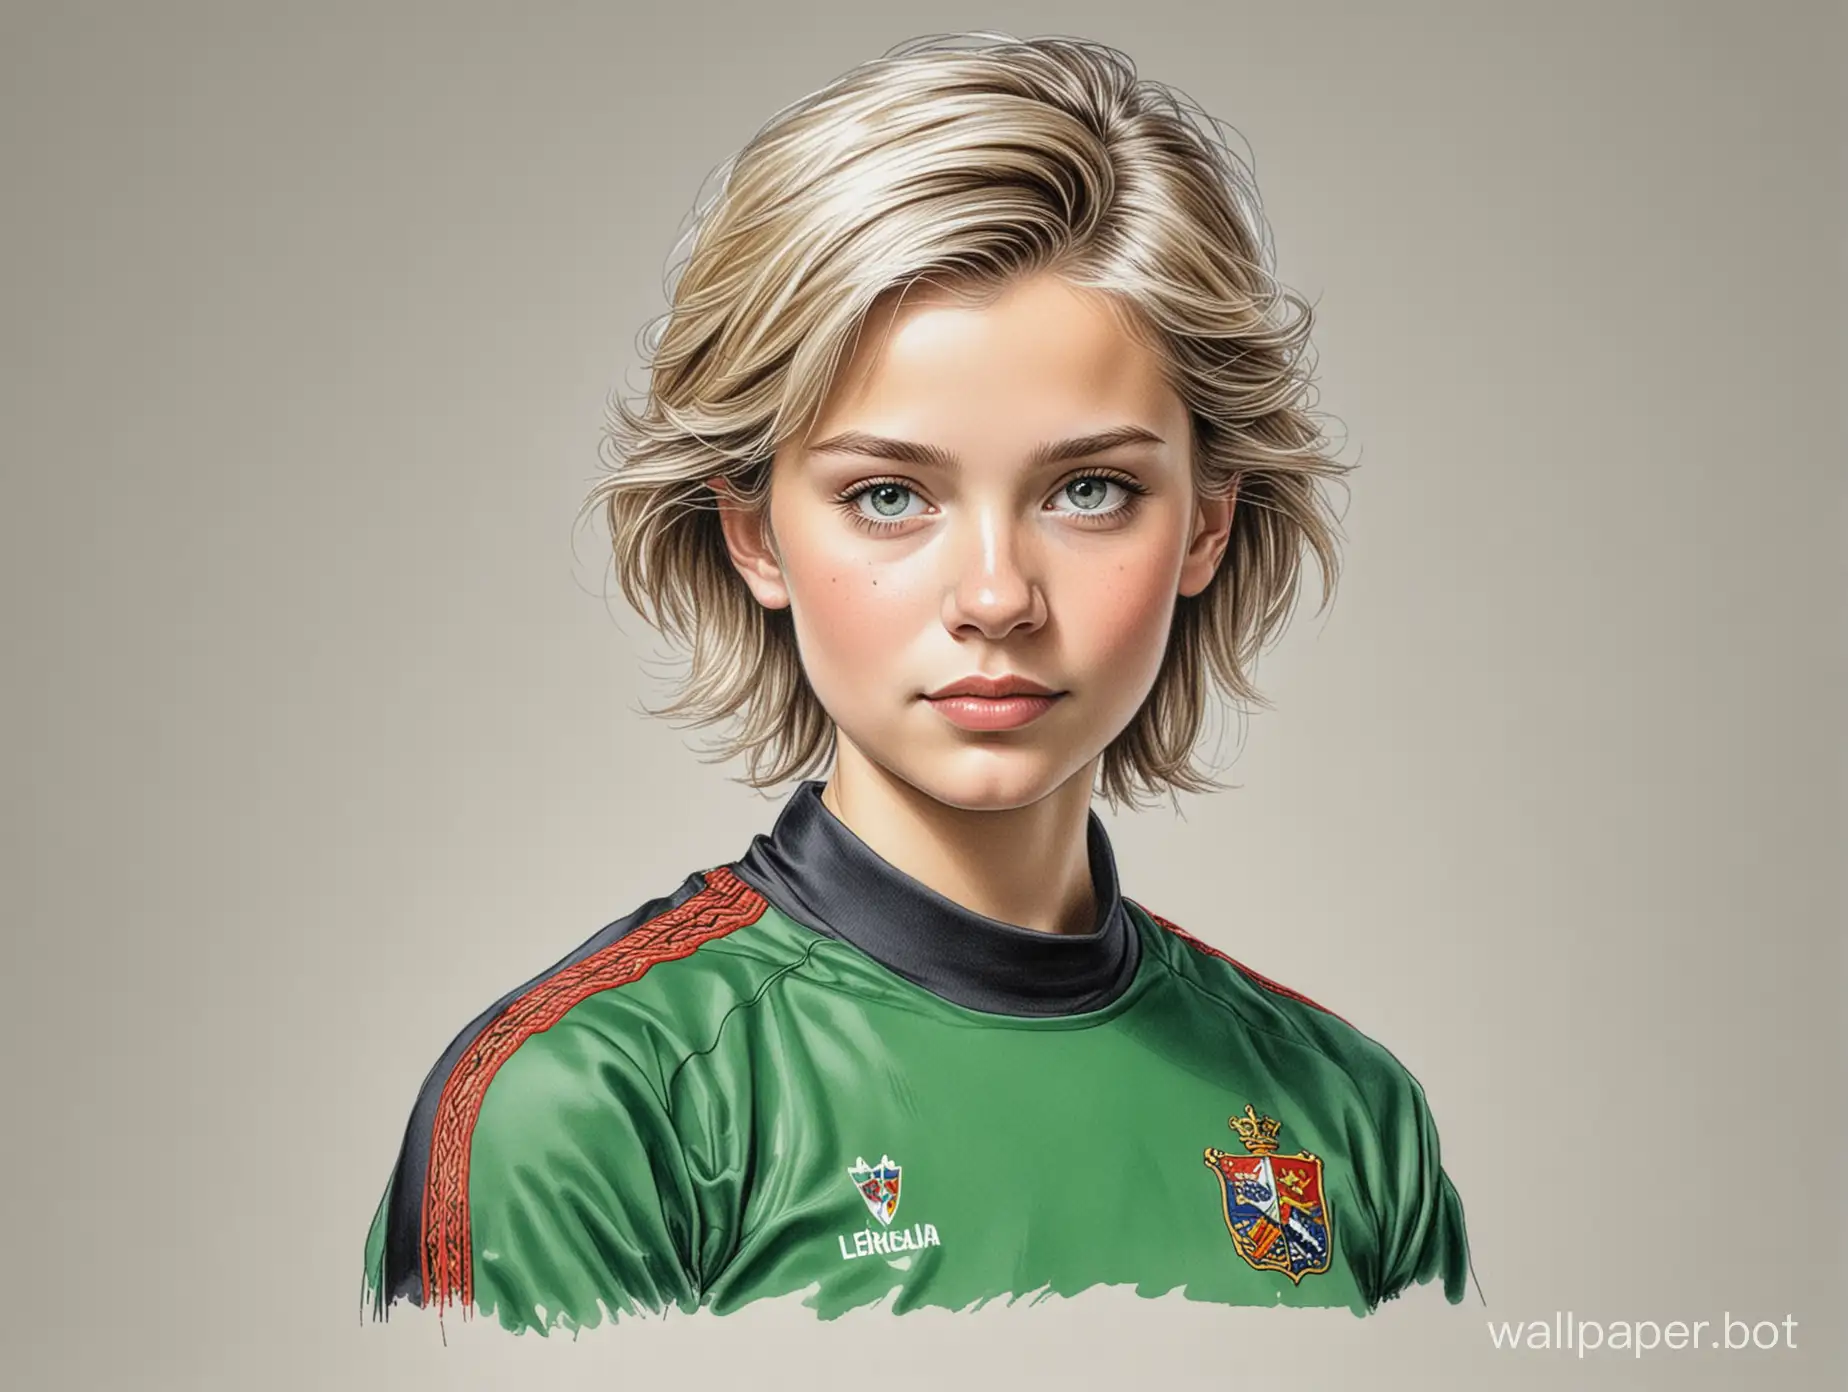 Portrait-of-Young-Elsa-von-Liechtenstein-in-BlackGreen-Soccer-Uniform